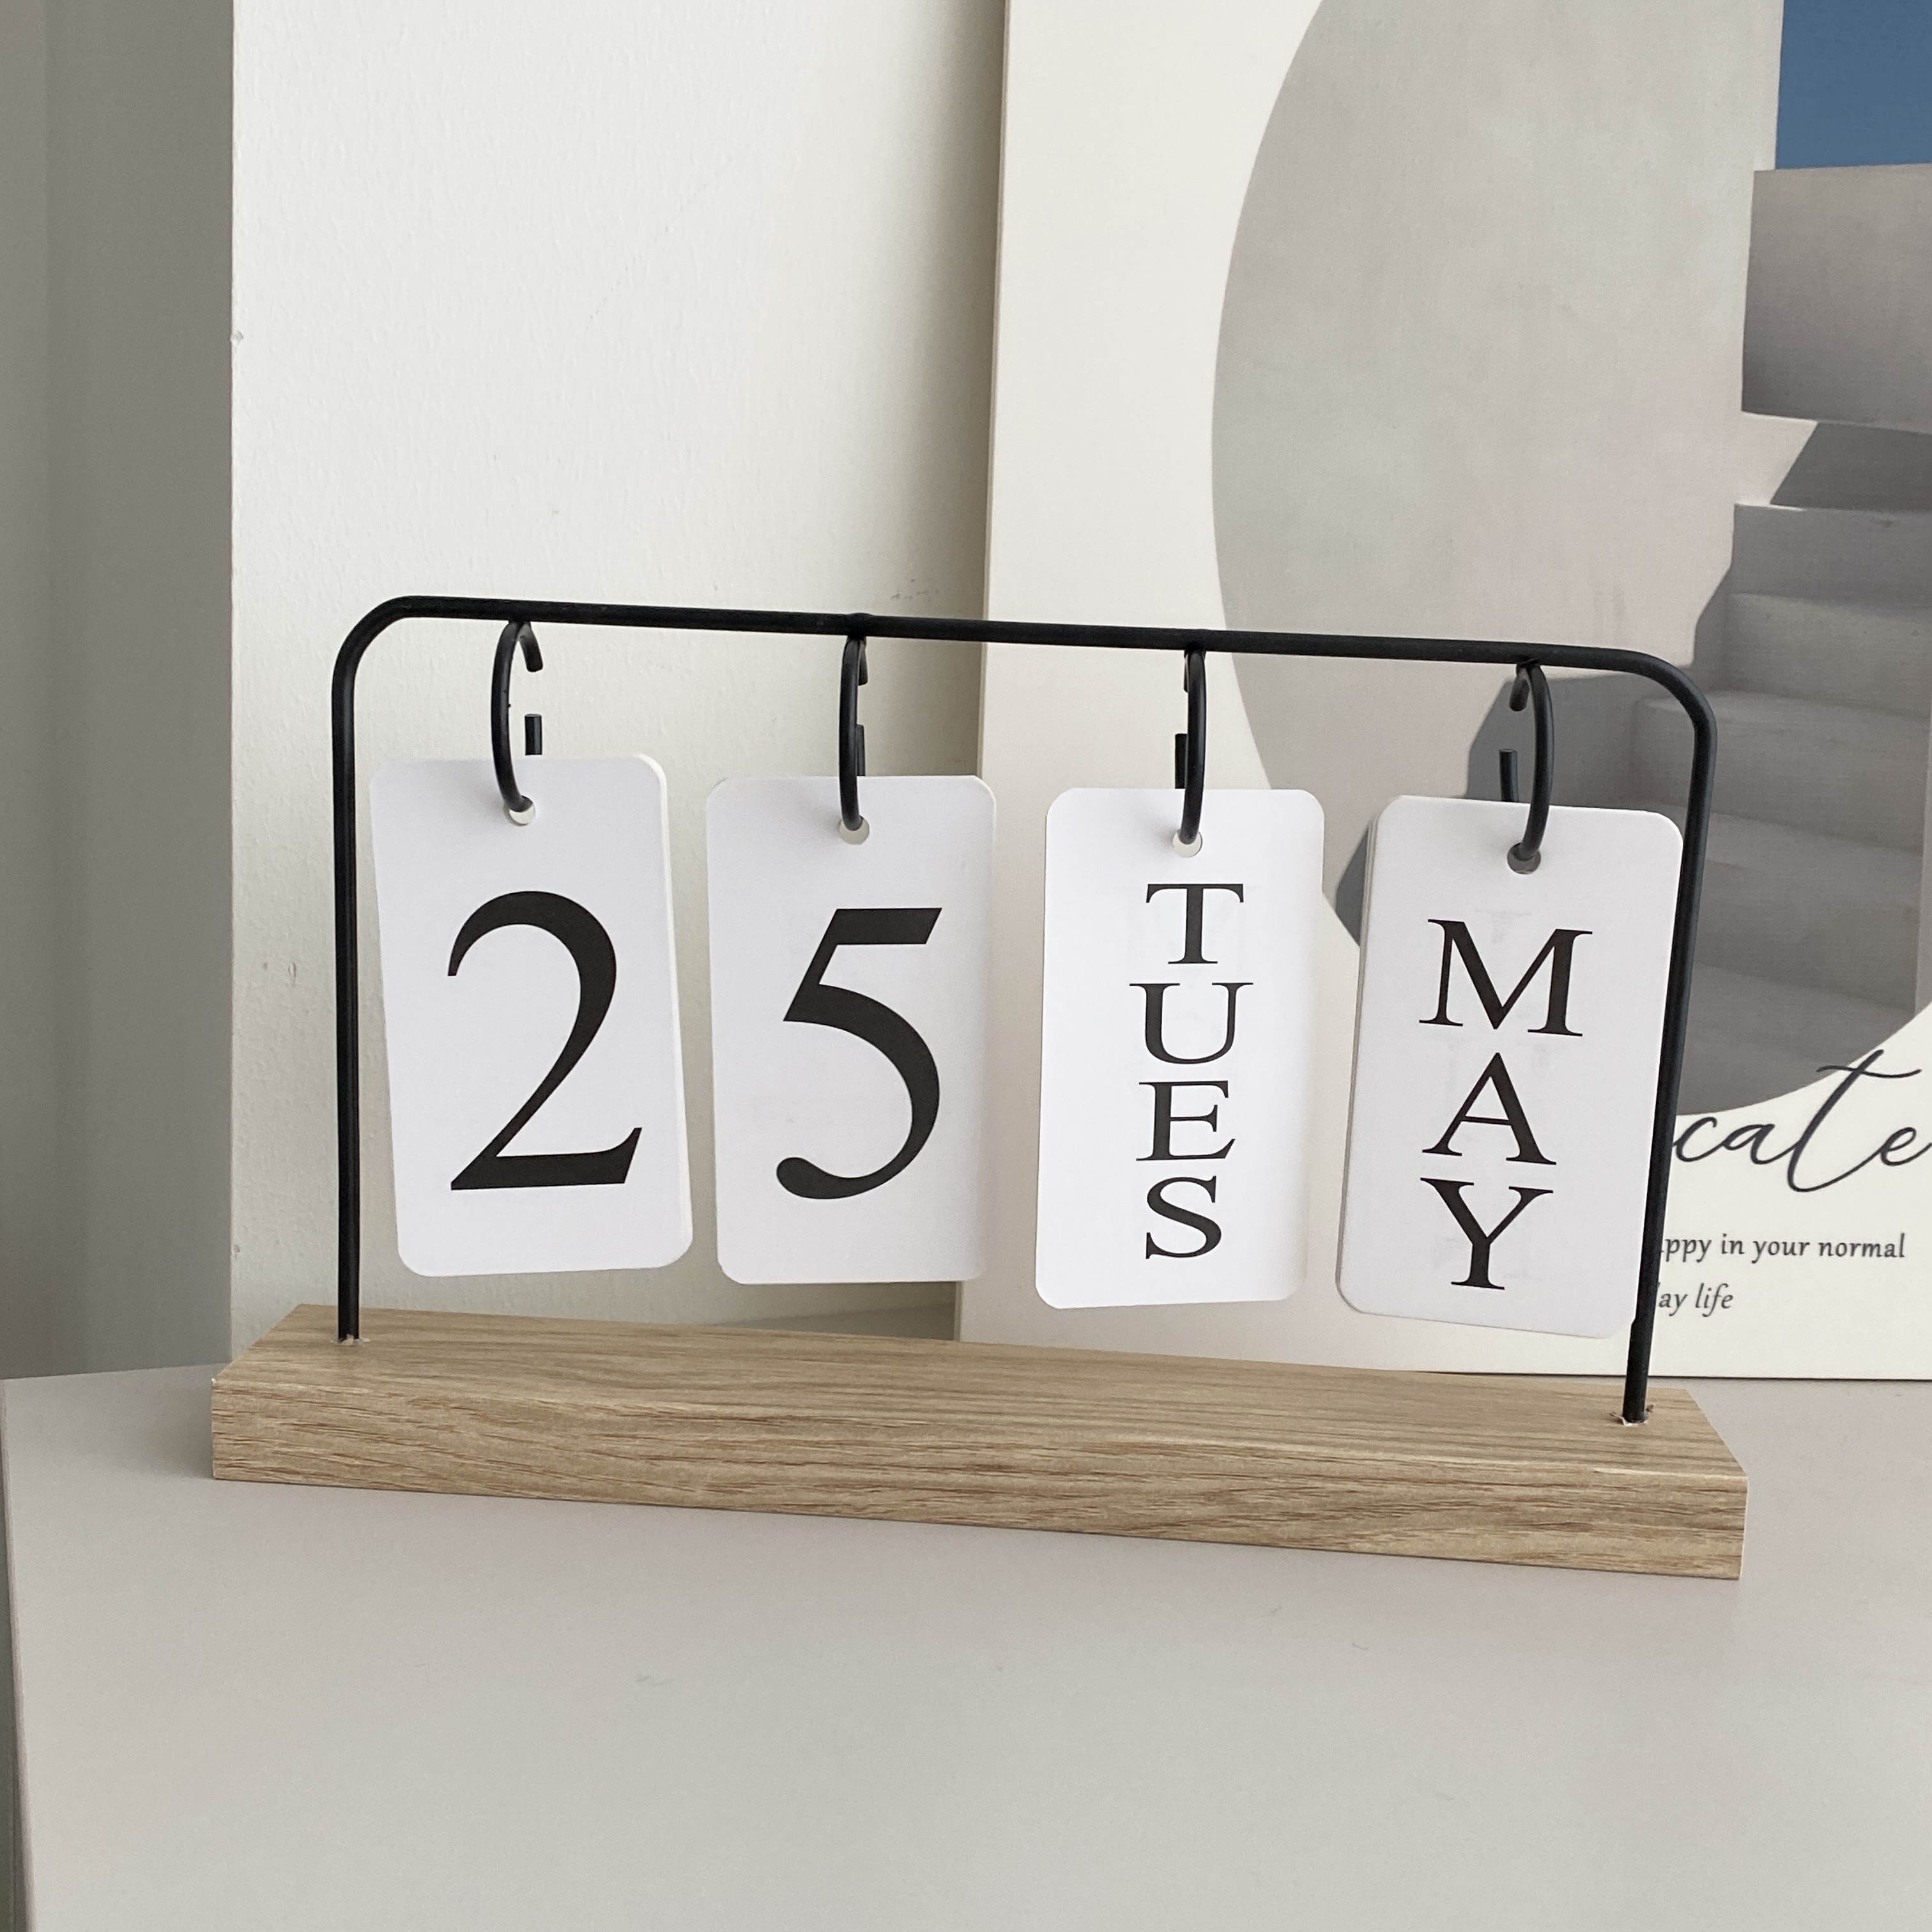 Yoofun-Mini calendrier de bureau, calendrier de table, licence mémo,  matériel de décoration de scrapbooking, papiers